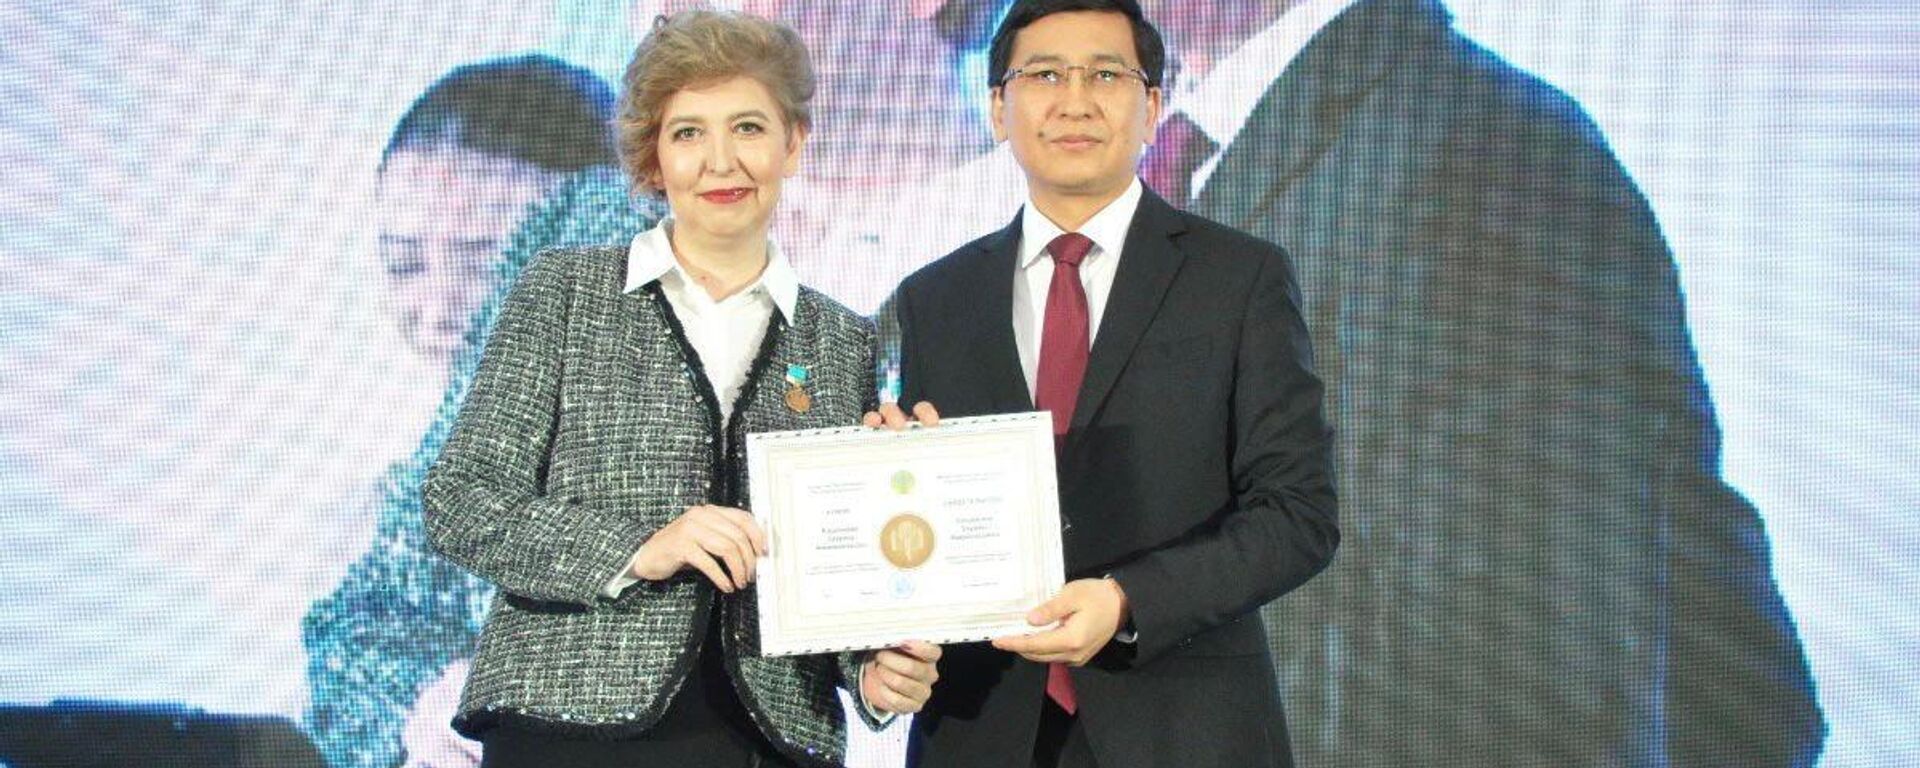 В Казахстане подвели итоги республиканского конкурса Лучший педагог-2022, определены 64 победителя - Sputnik Казахстан, 1920, 18.11.2022